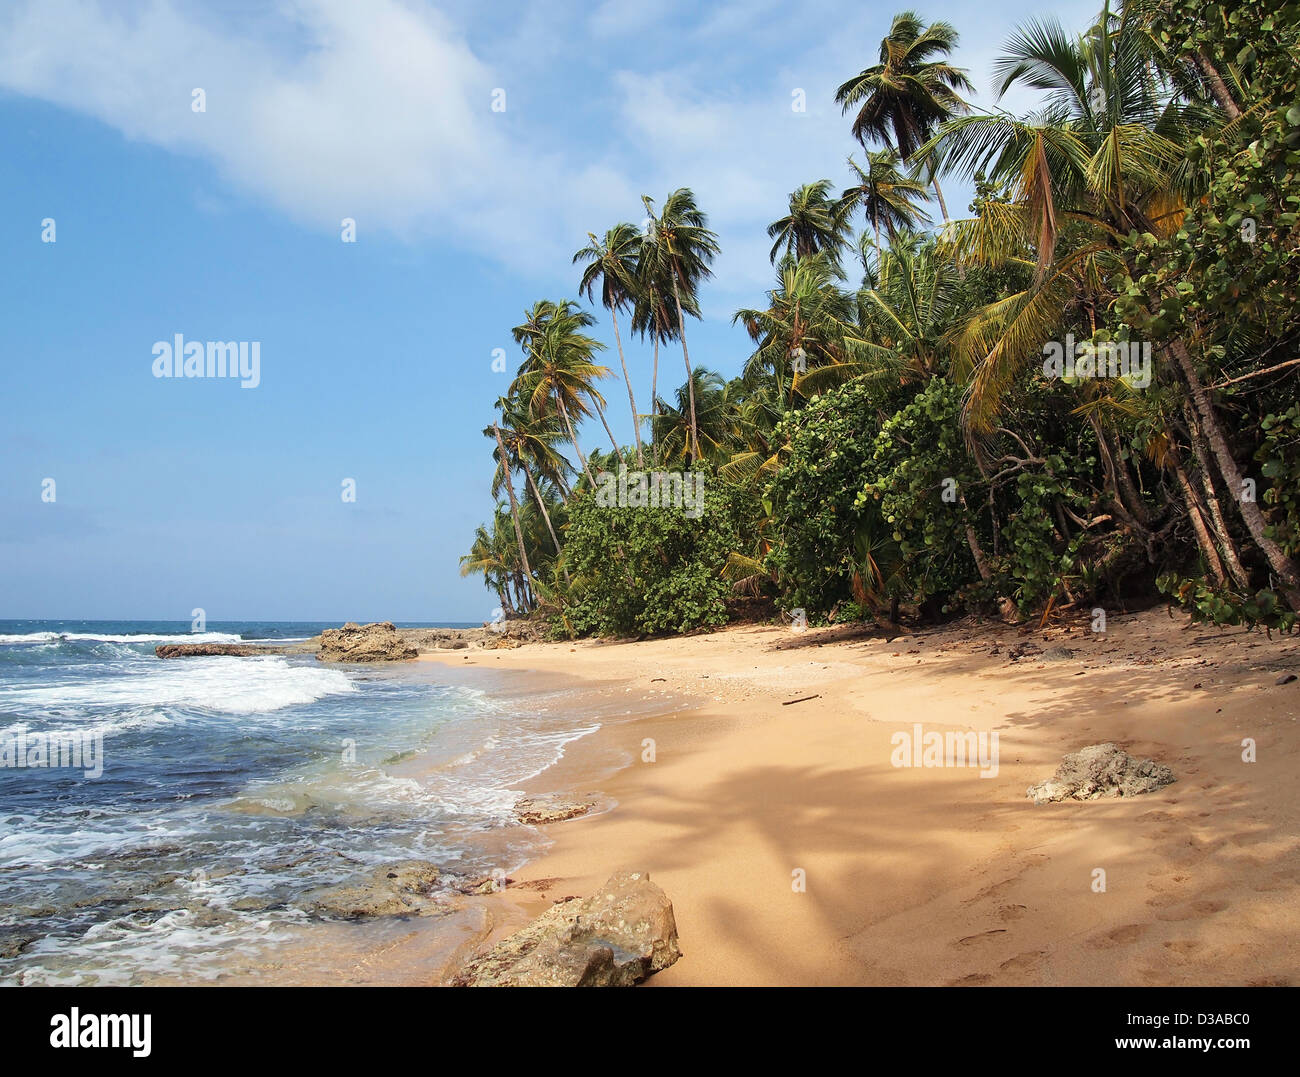 Unberührten tropischen Strand mit üppiger Vegetation und einem Schirm aus einer Kokospalme auf dem sand Stockfoto